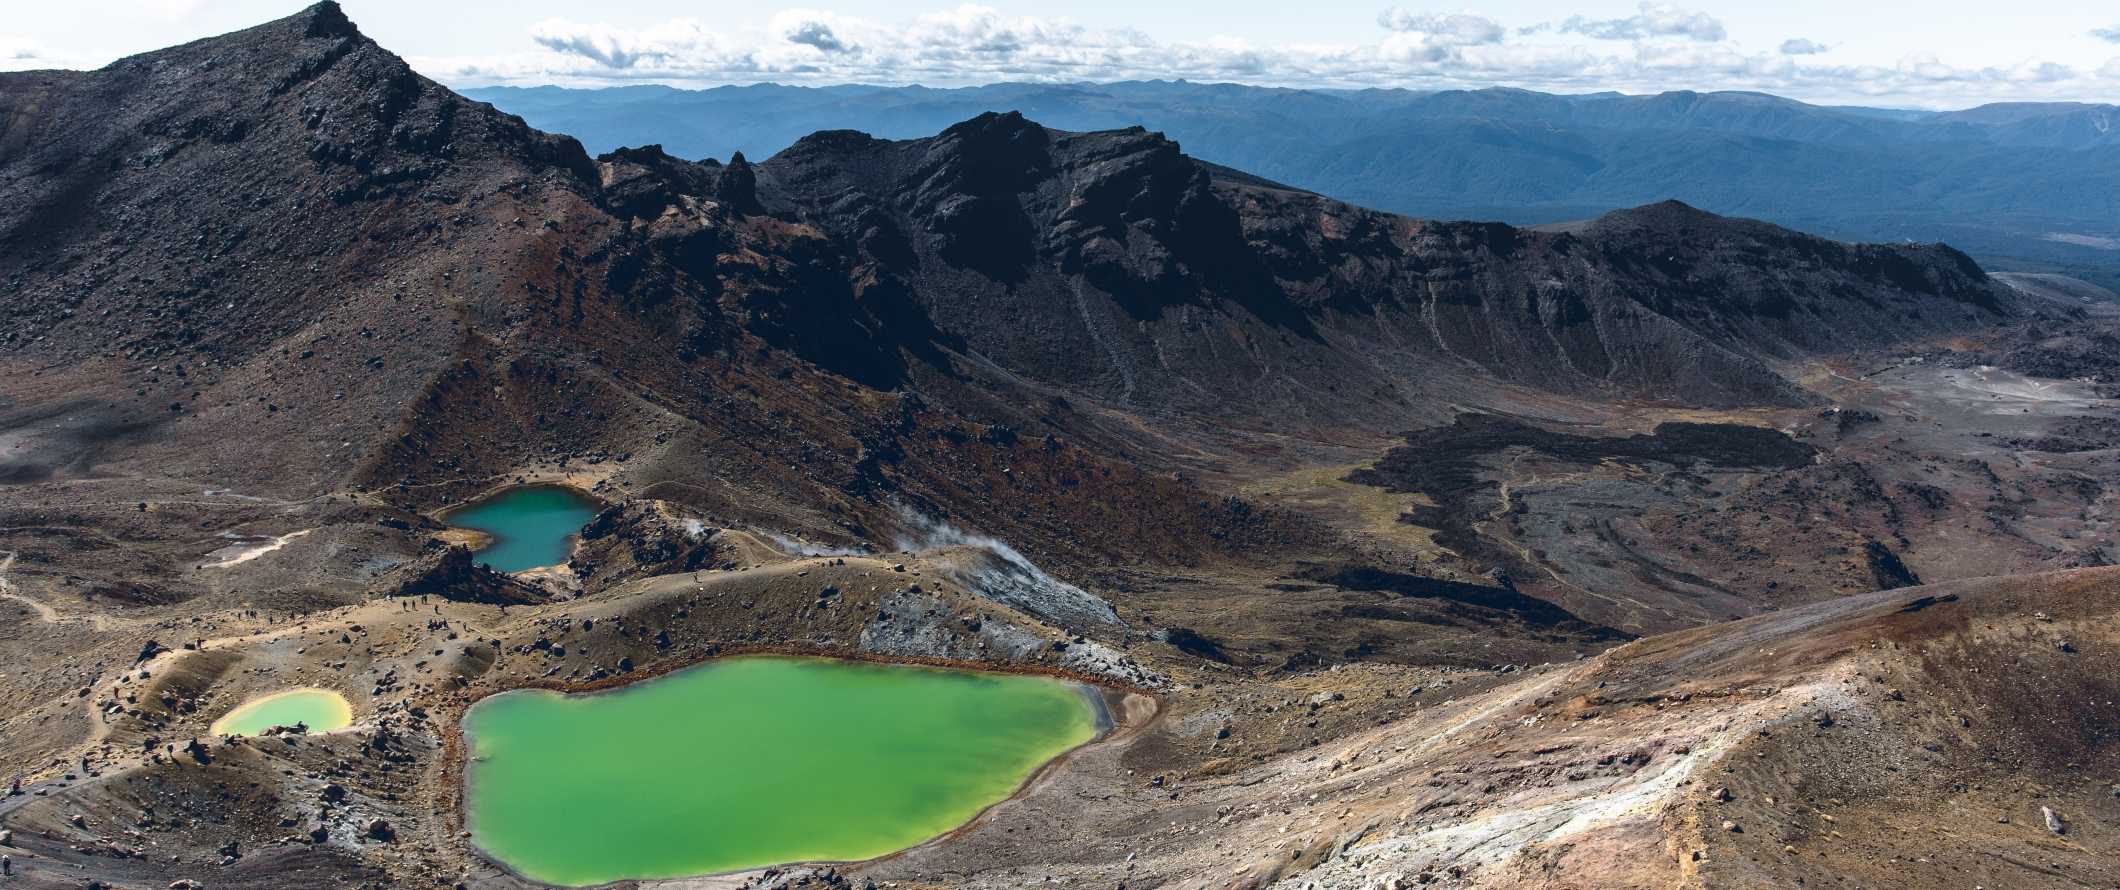 Paisagens vulcânicas dramáticas com lagos verdes brilhantes abaixo, na travessia alpina de Tumariro, perto de Taupo, Nova Zelândia